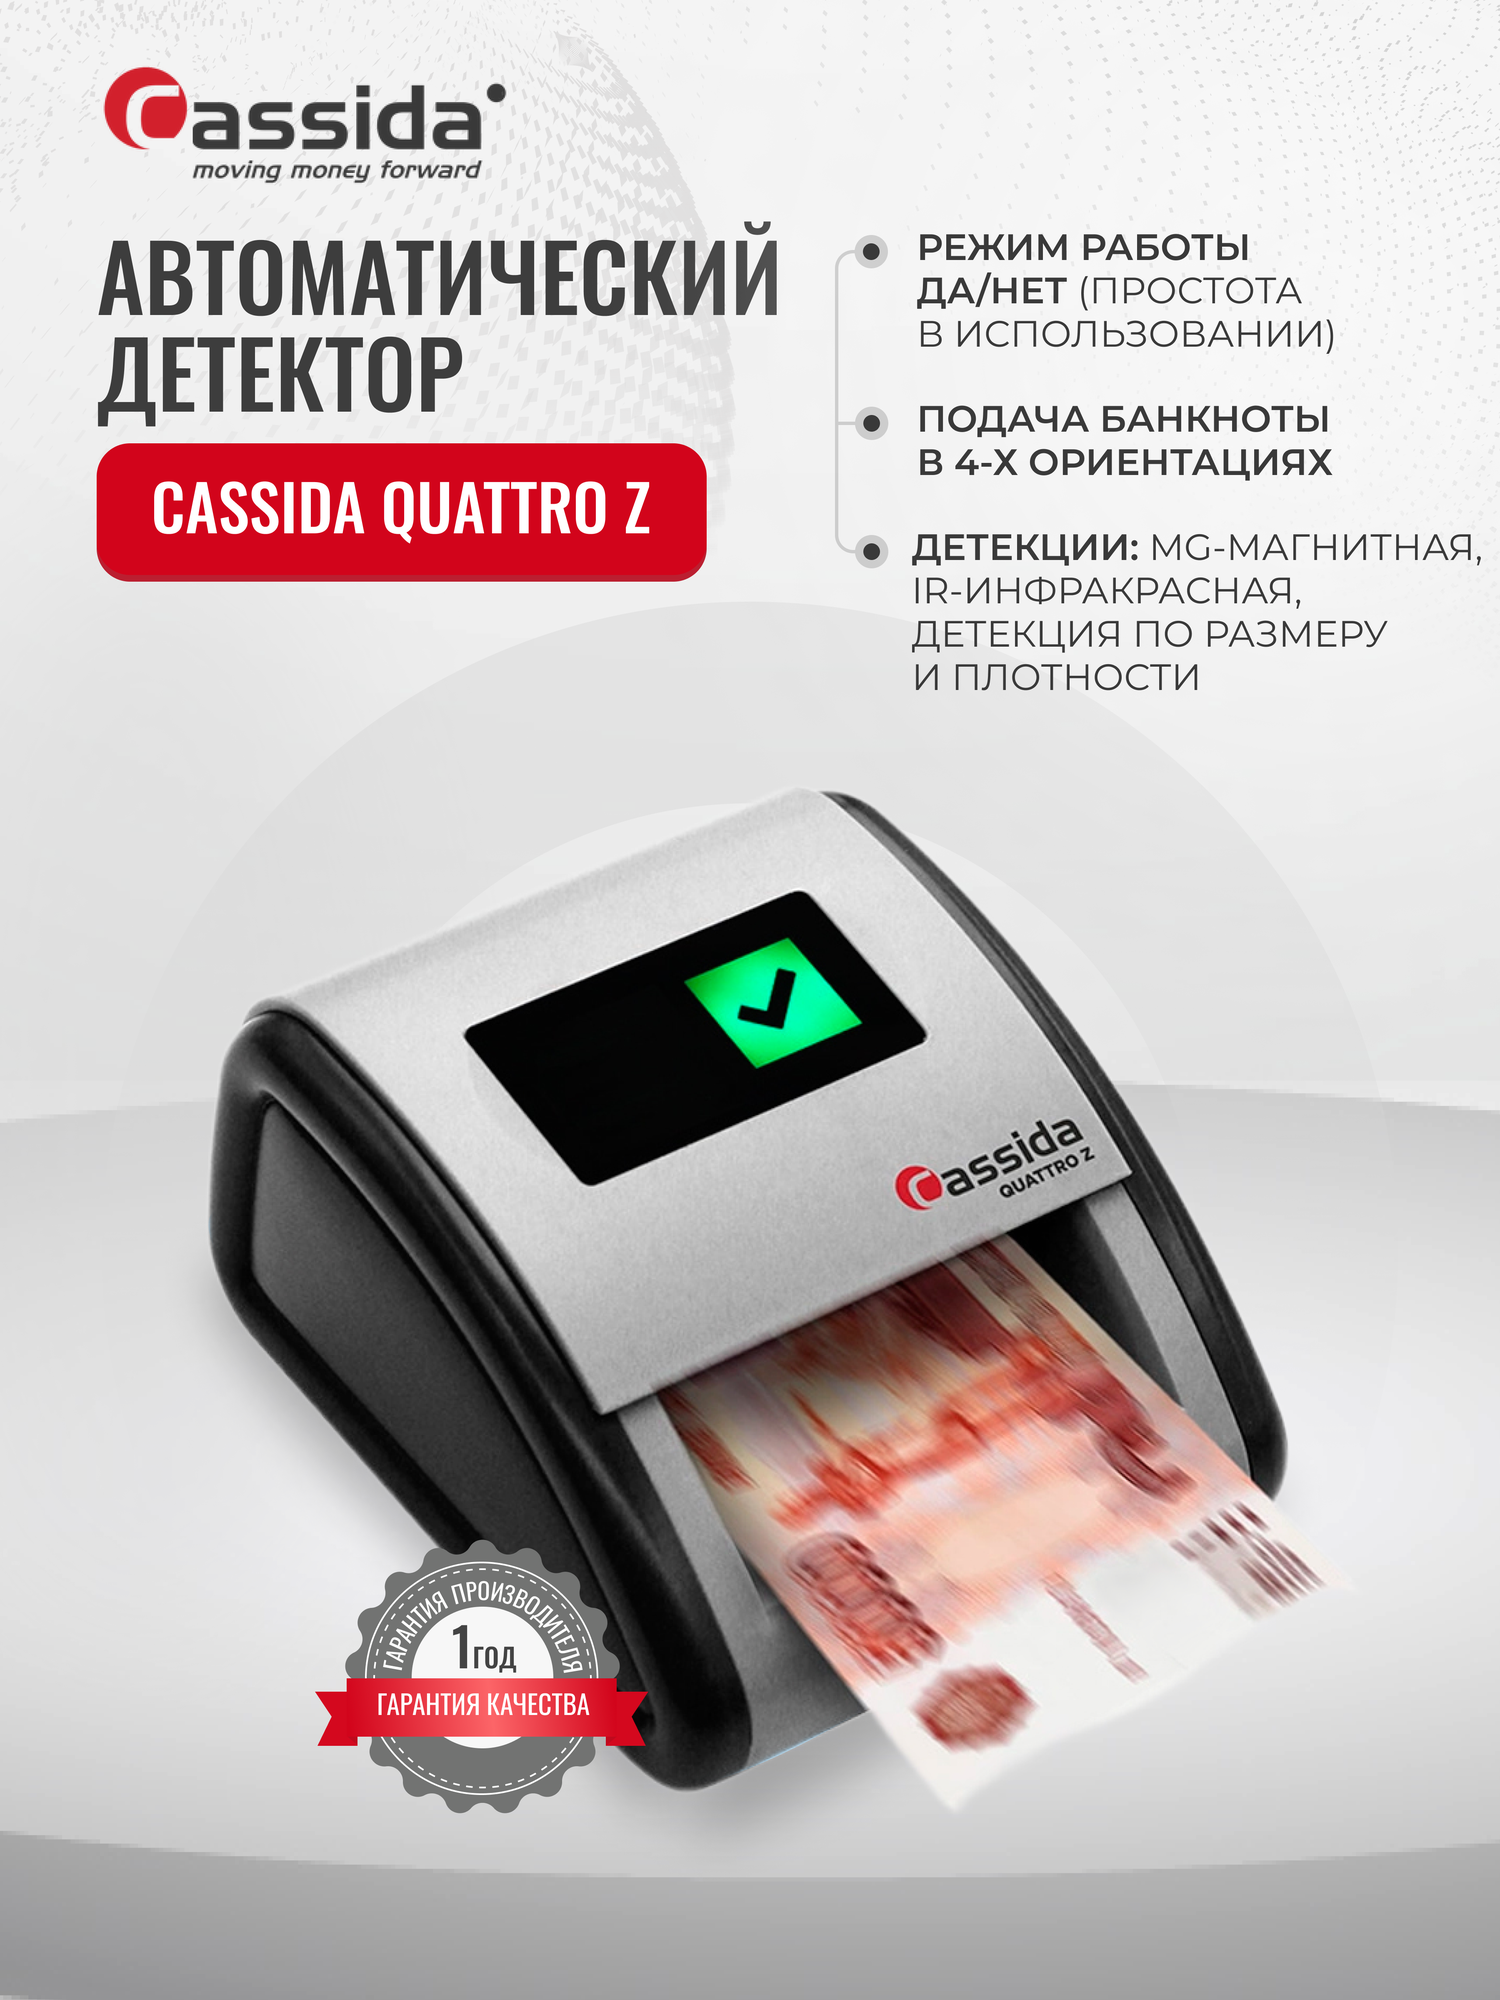 Автоматический детектор банкнот Cassida Quattro Z / Режим работы Да/Нет/ Проверка на подлинность